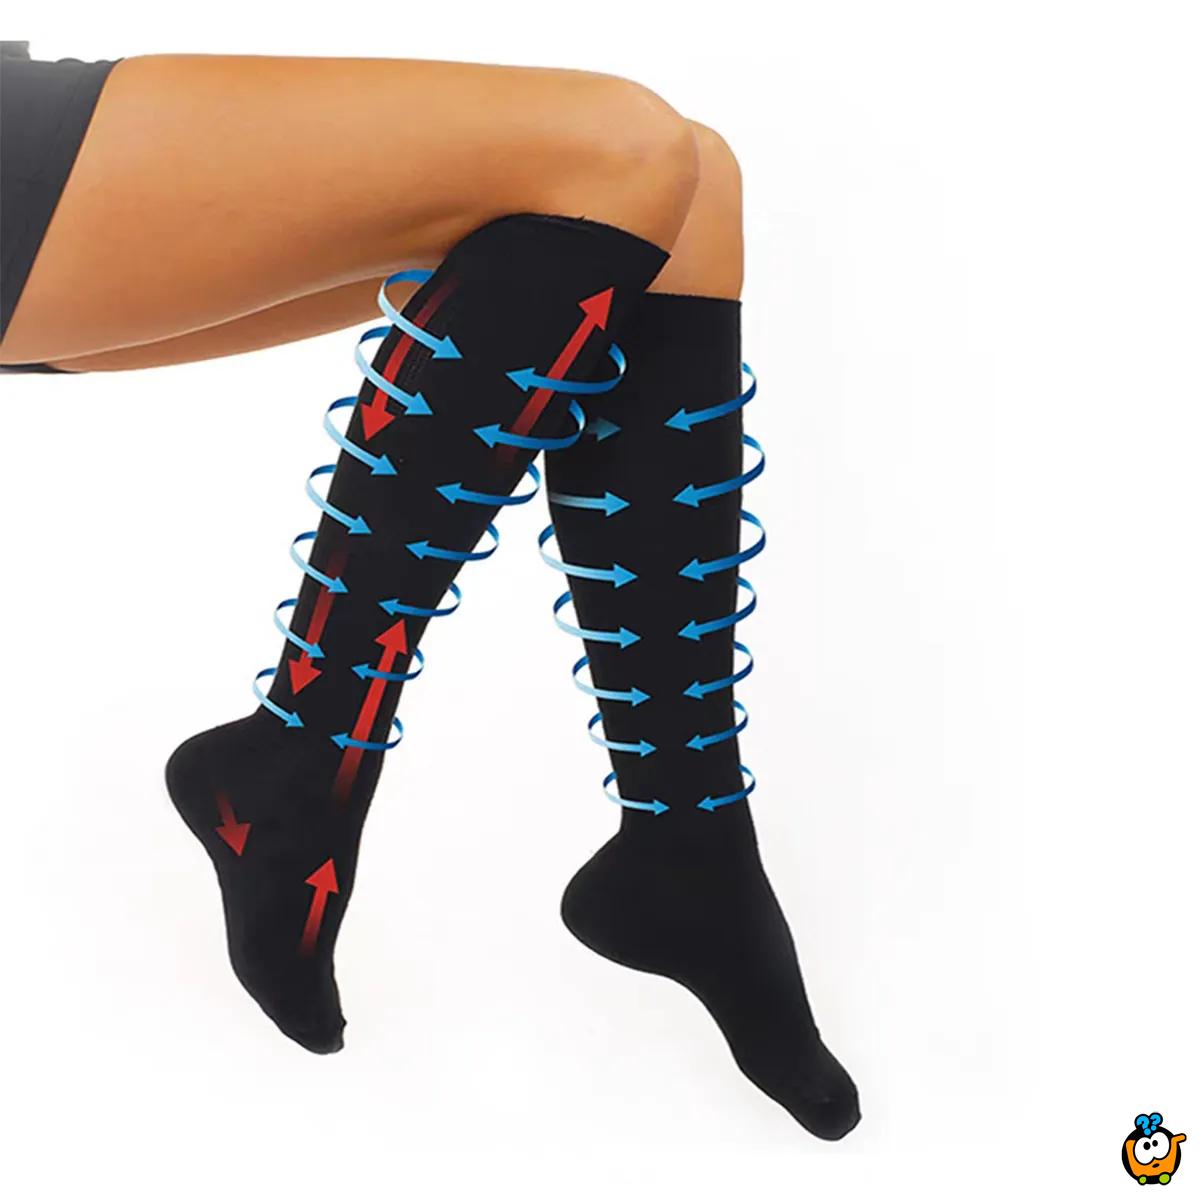 Miracle socks - kompresivne čarape za umorne noge